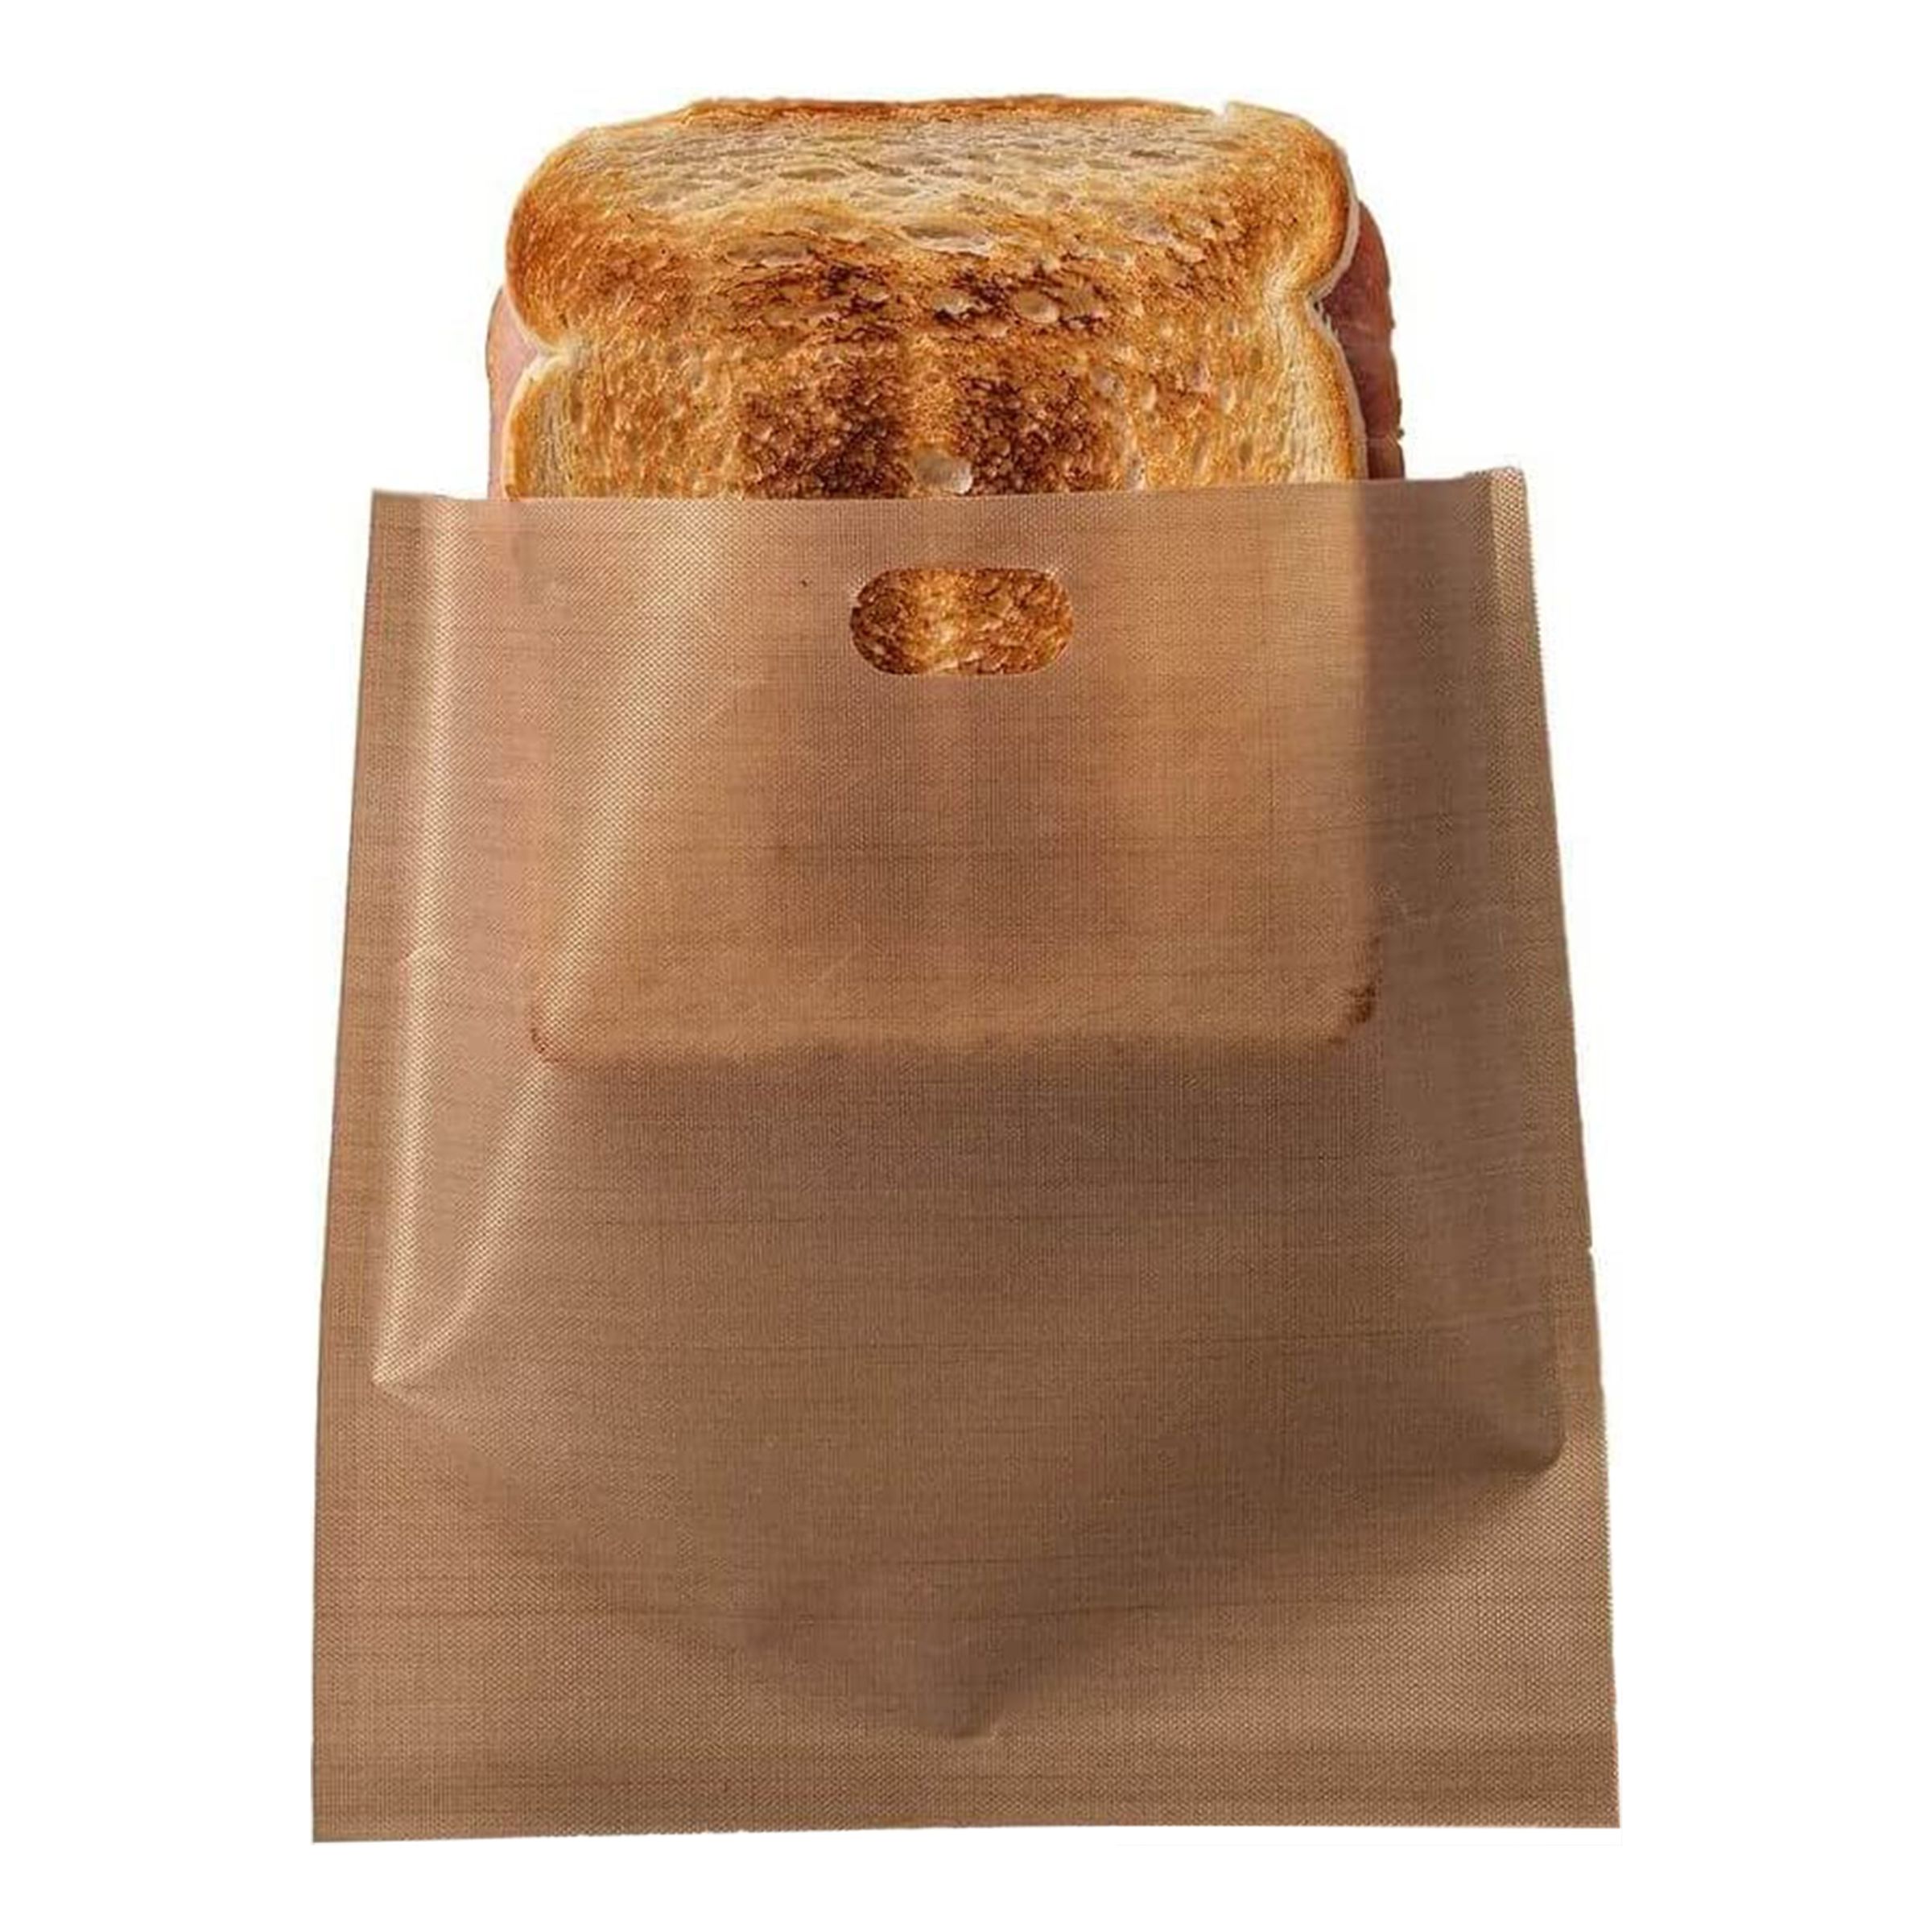 Återanvändbara Toastpåsar - 6-pack